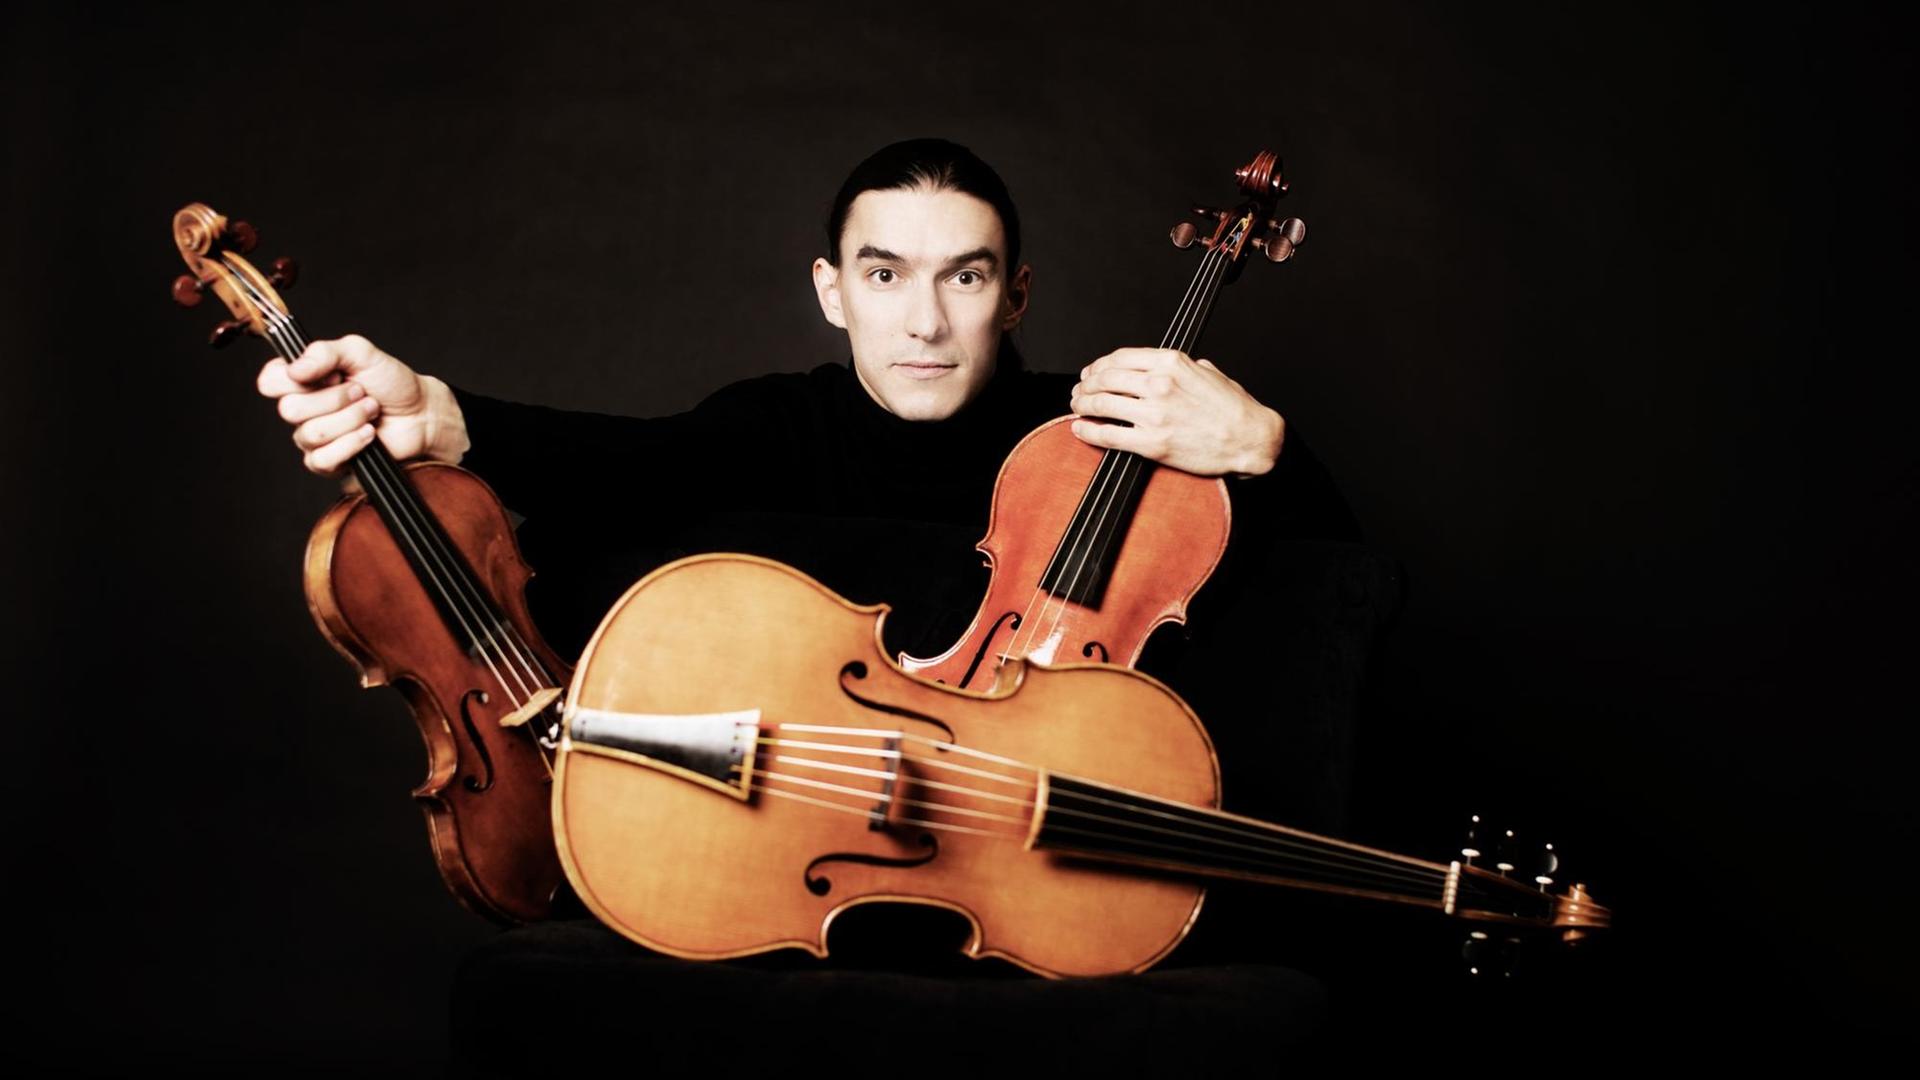 Der Geiger Sergey Malov ist mit drei verschiedenen Streichinstrumenten abgebildet, zwei davon hält er jeweils in einer Hand, er trägt dunkle Kleidung von einem dunklen Hintergrund